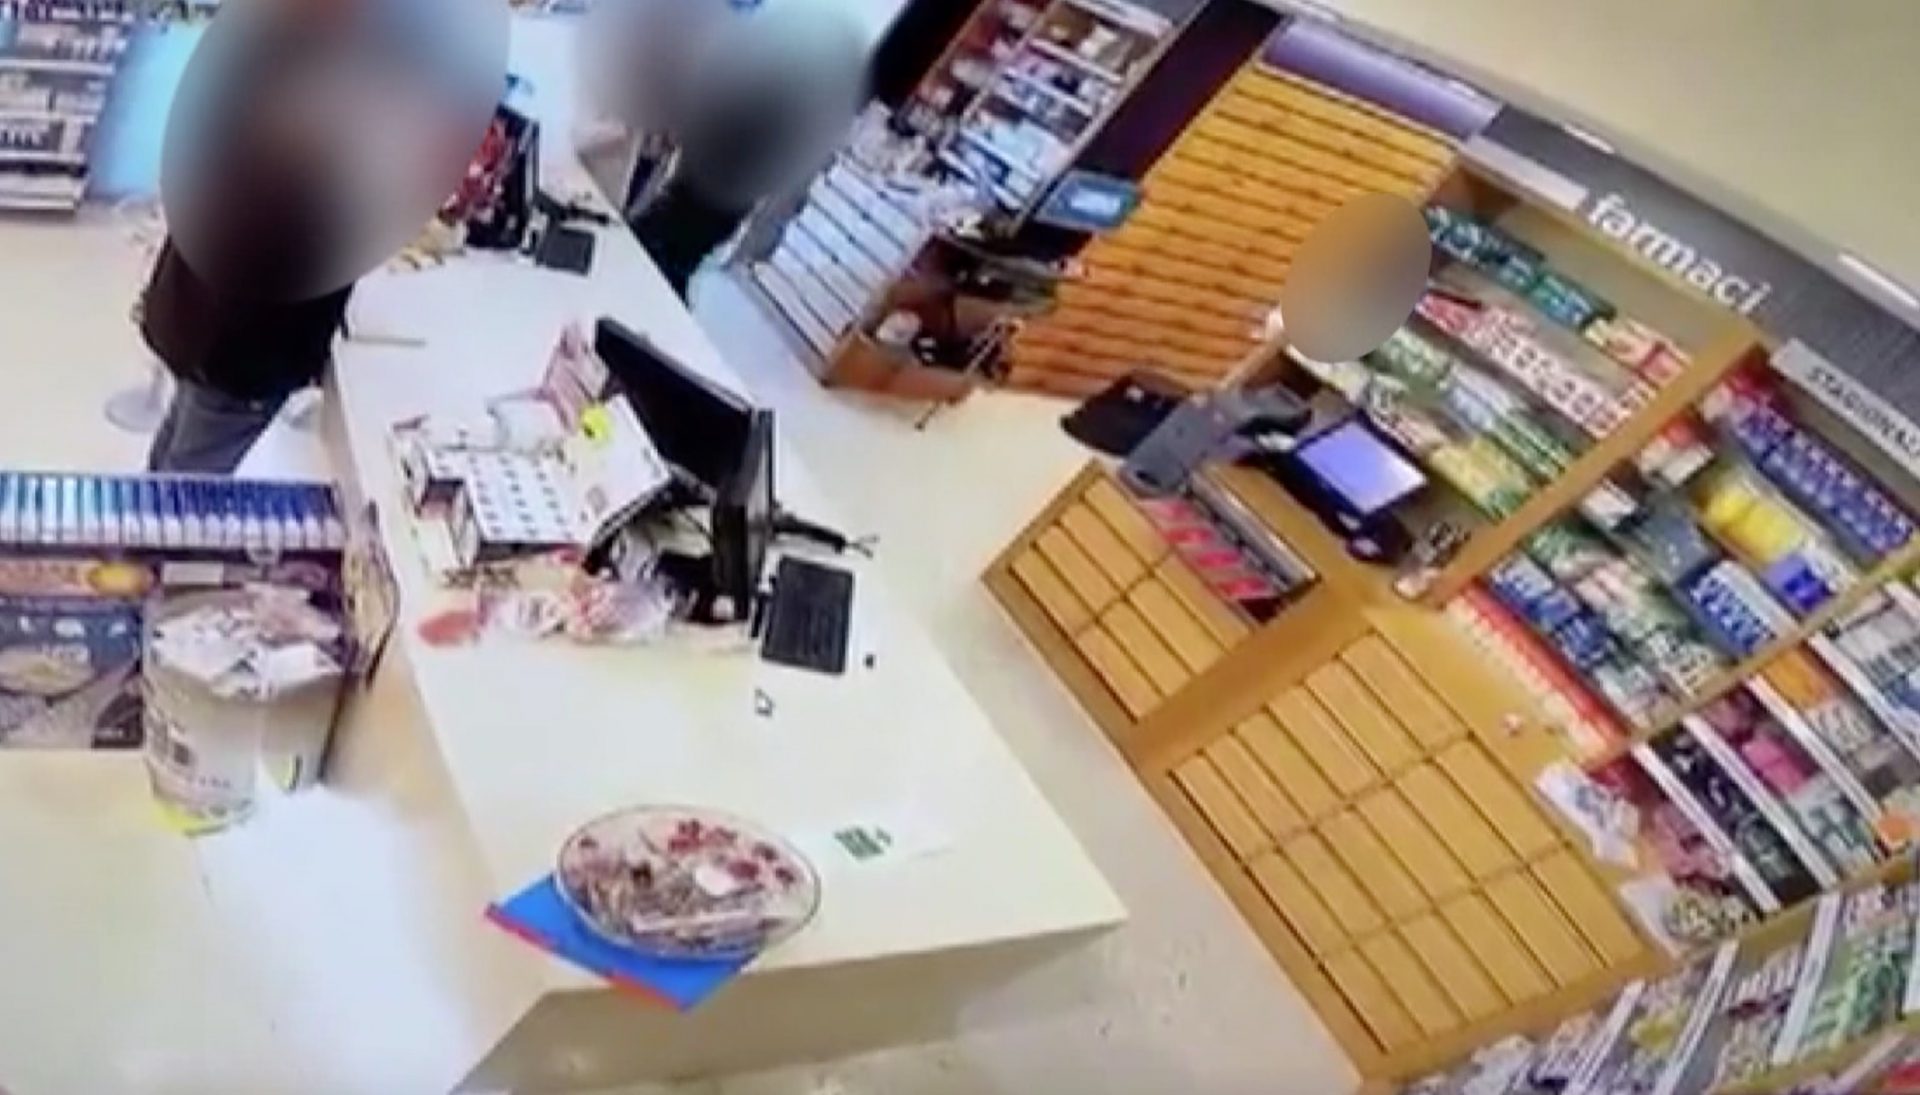 Taurianova, tentato stupro in una farmacia: aggressore bloccato dai clienti – VIDEO